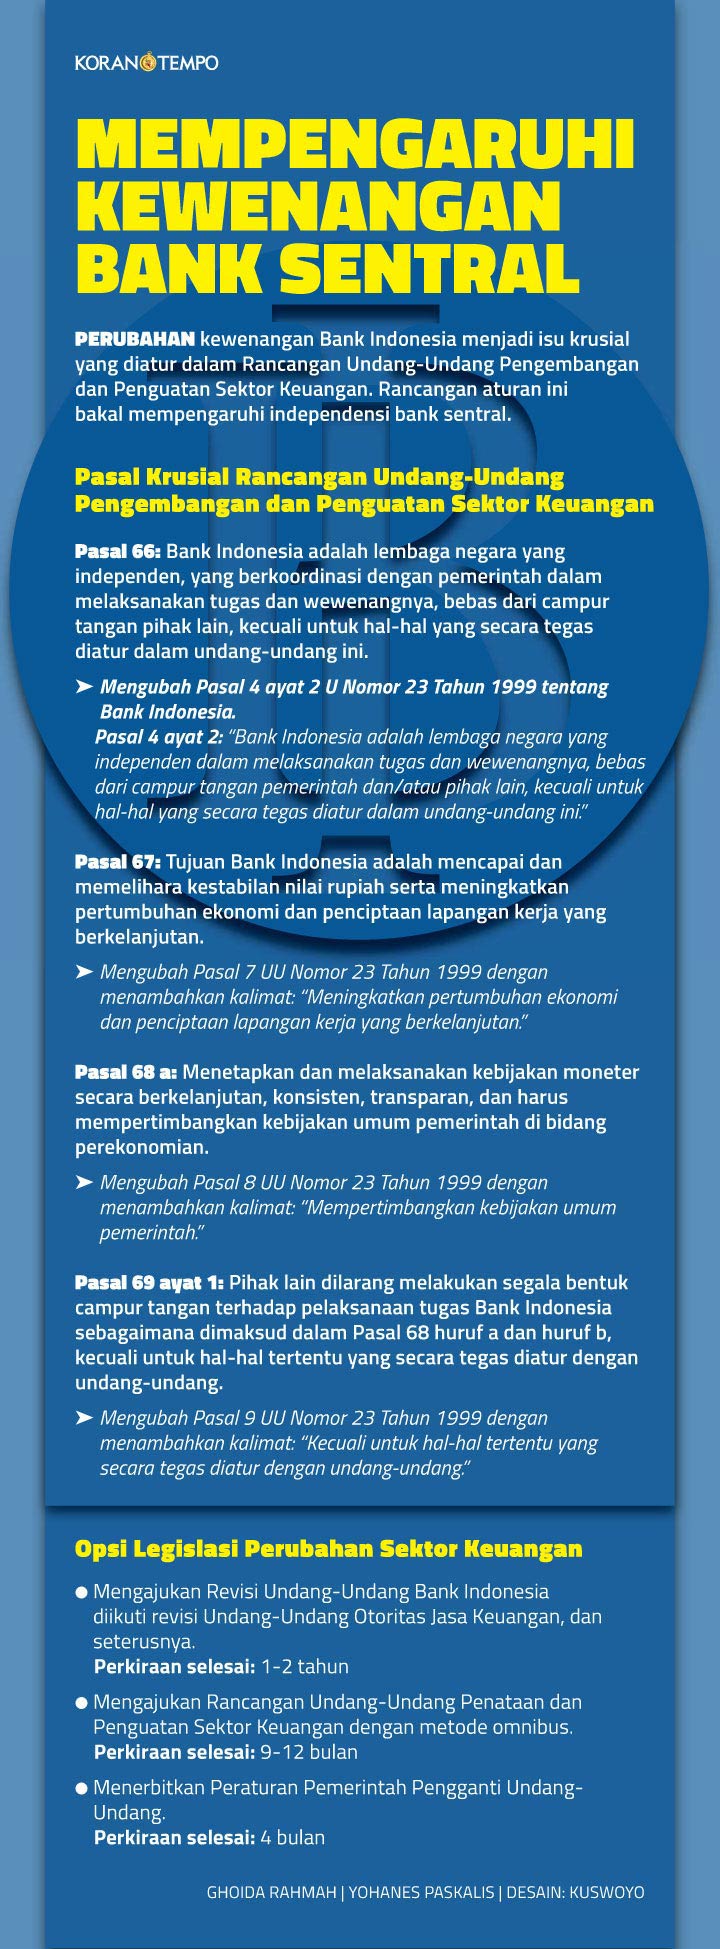 Tujuan dan tugas bank indonesia diatur dalam uu nomor